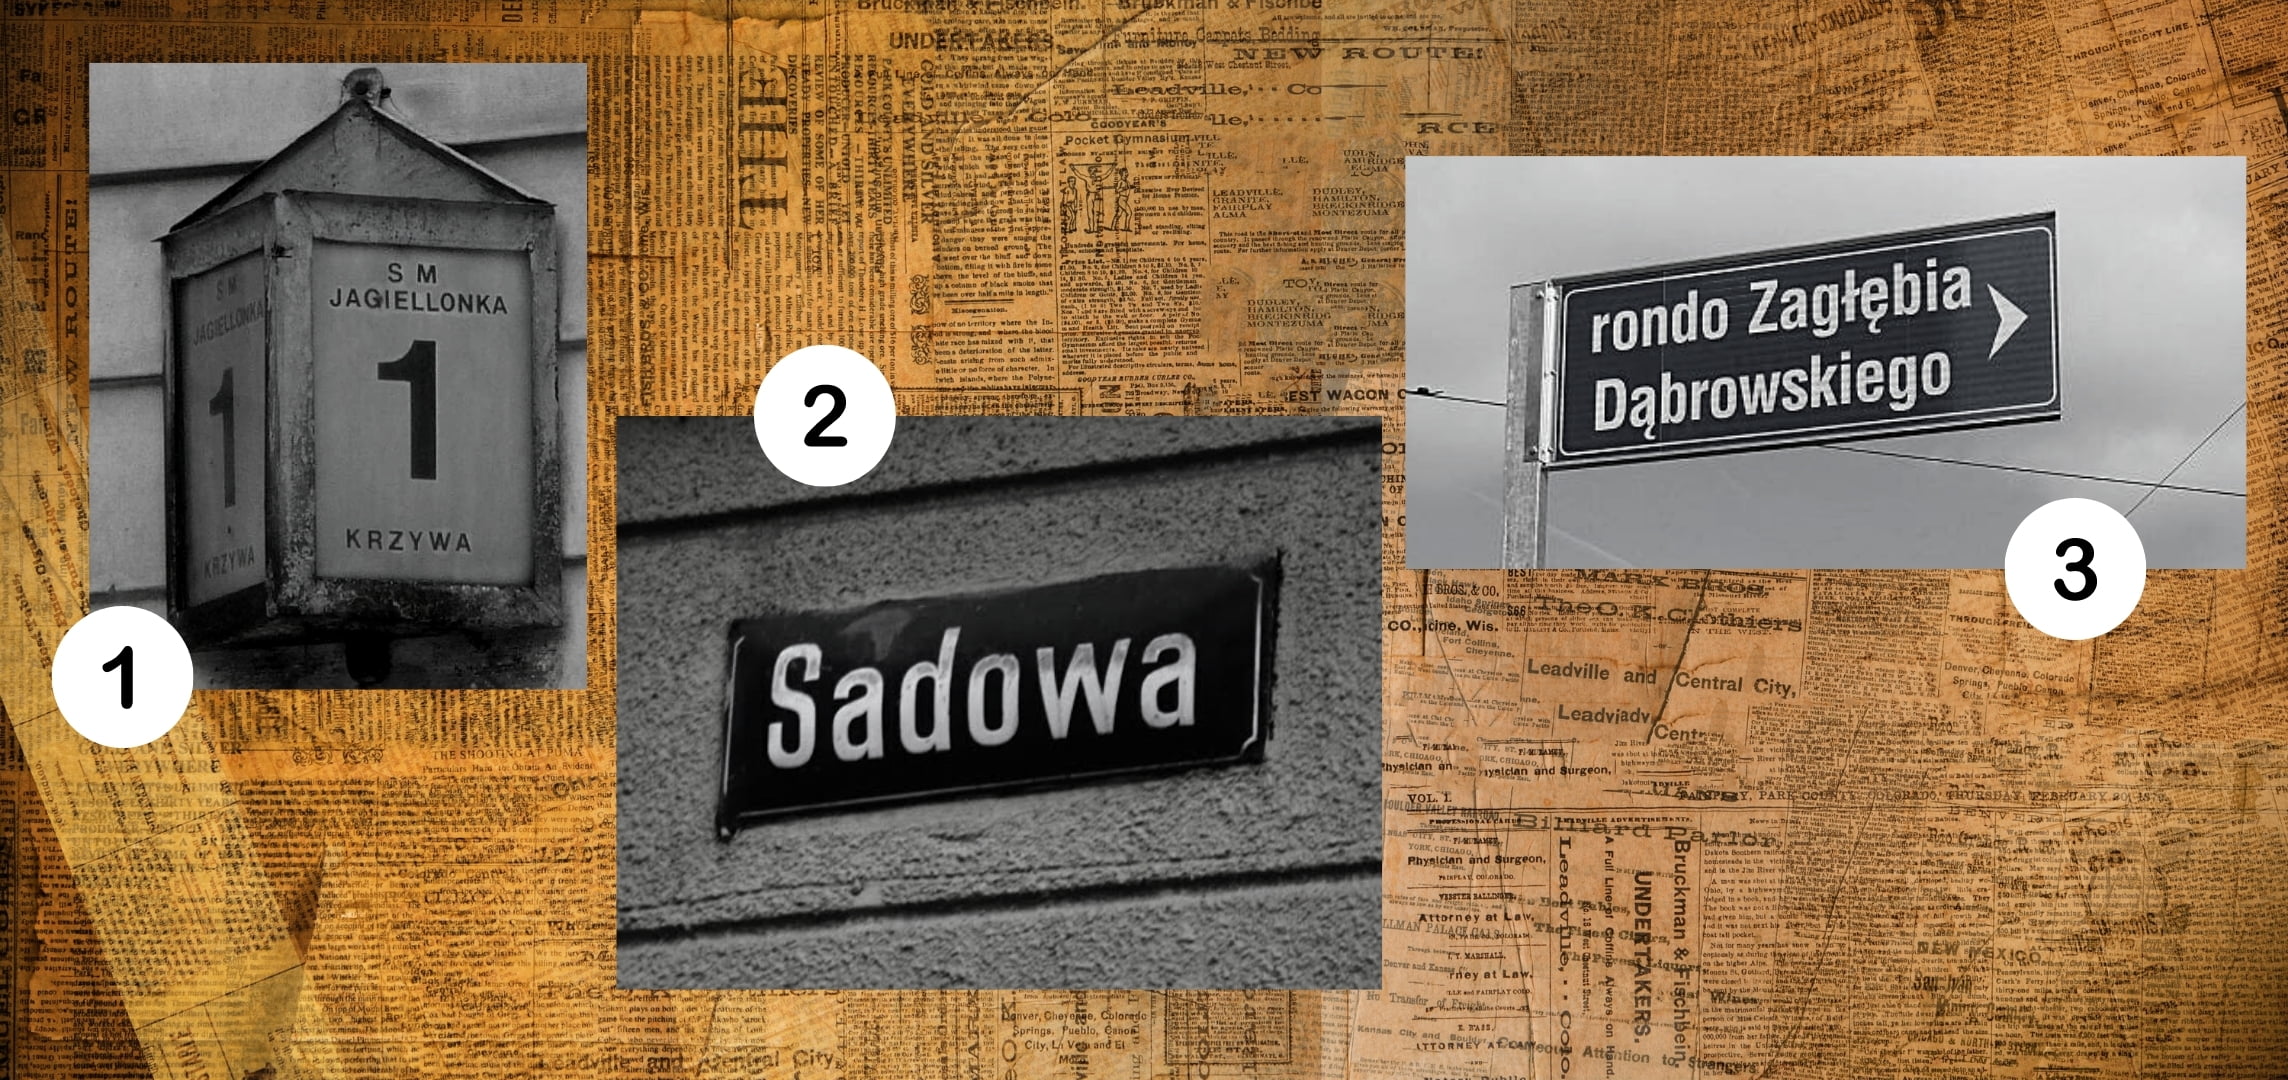 Numer 1 to ulica Krzywa. Numer 2 to ulica Sadowa. Numer 3 to rondo Zagłębia Dąbrowskiego..